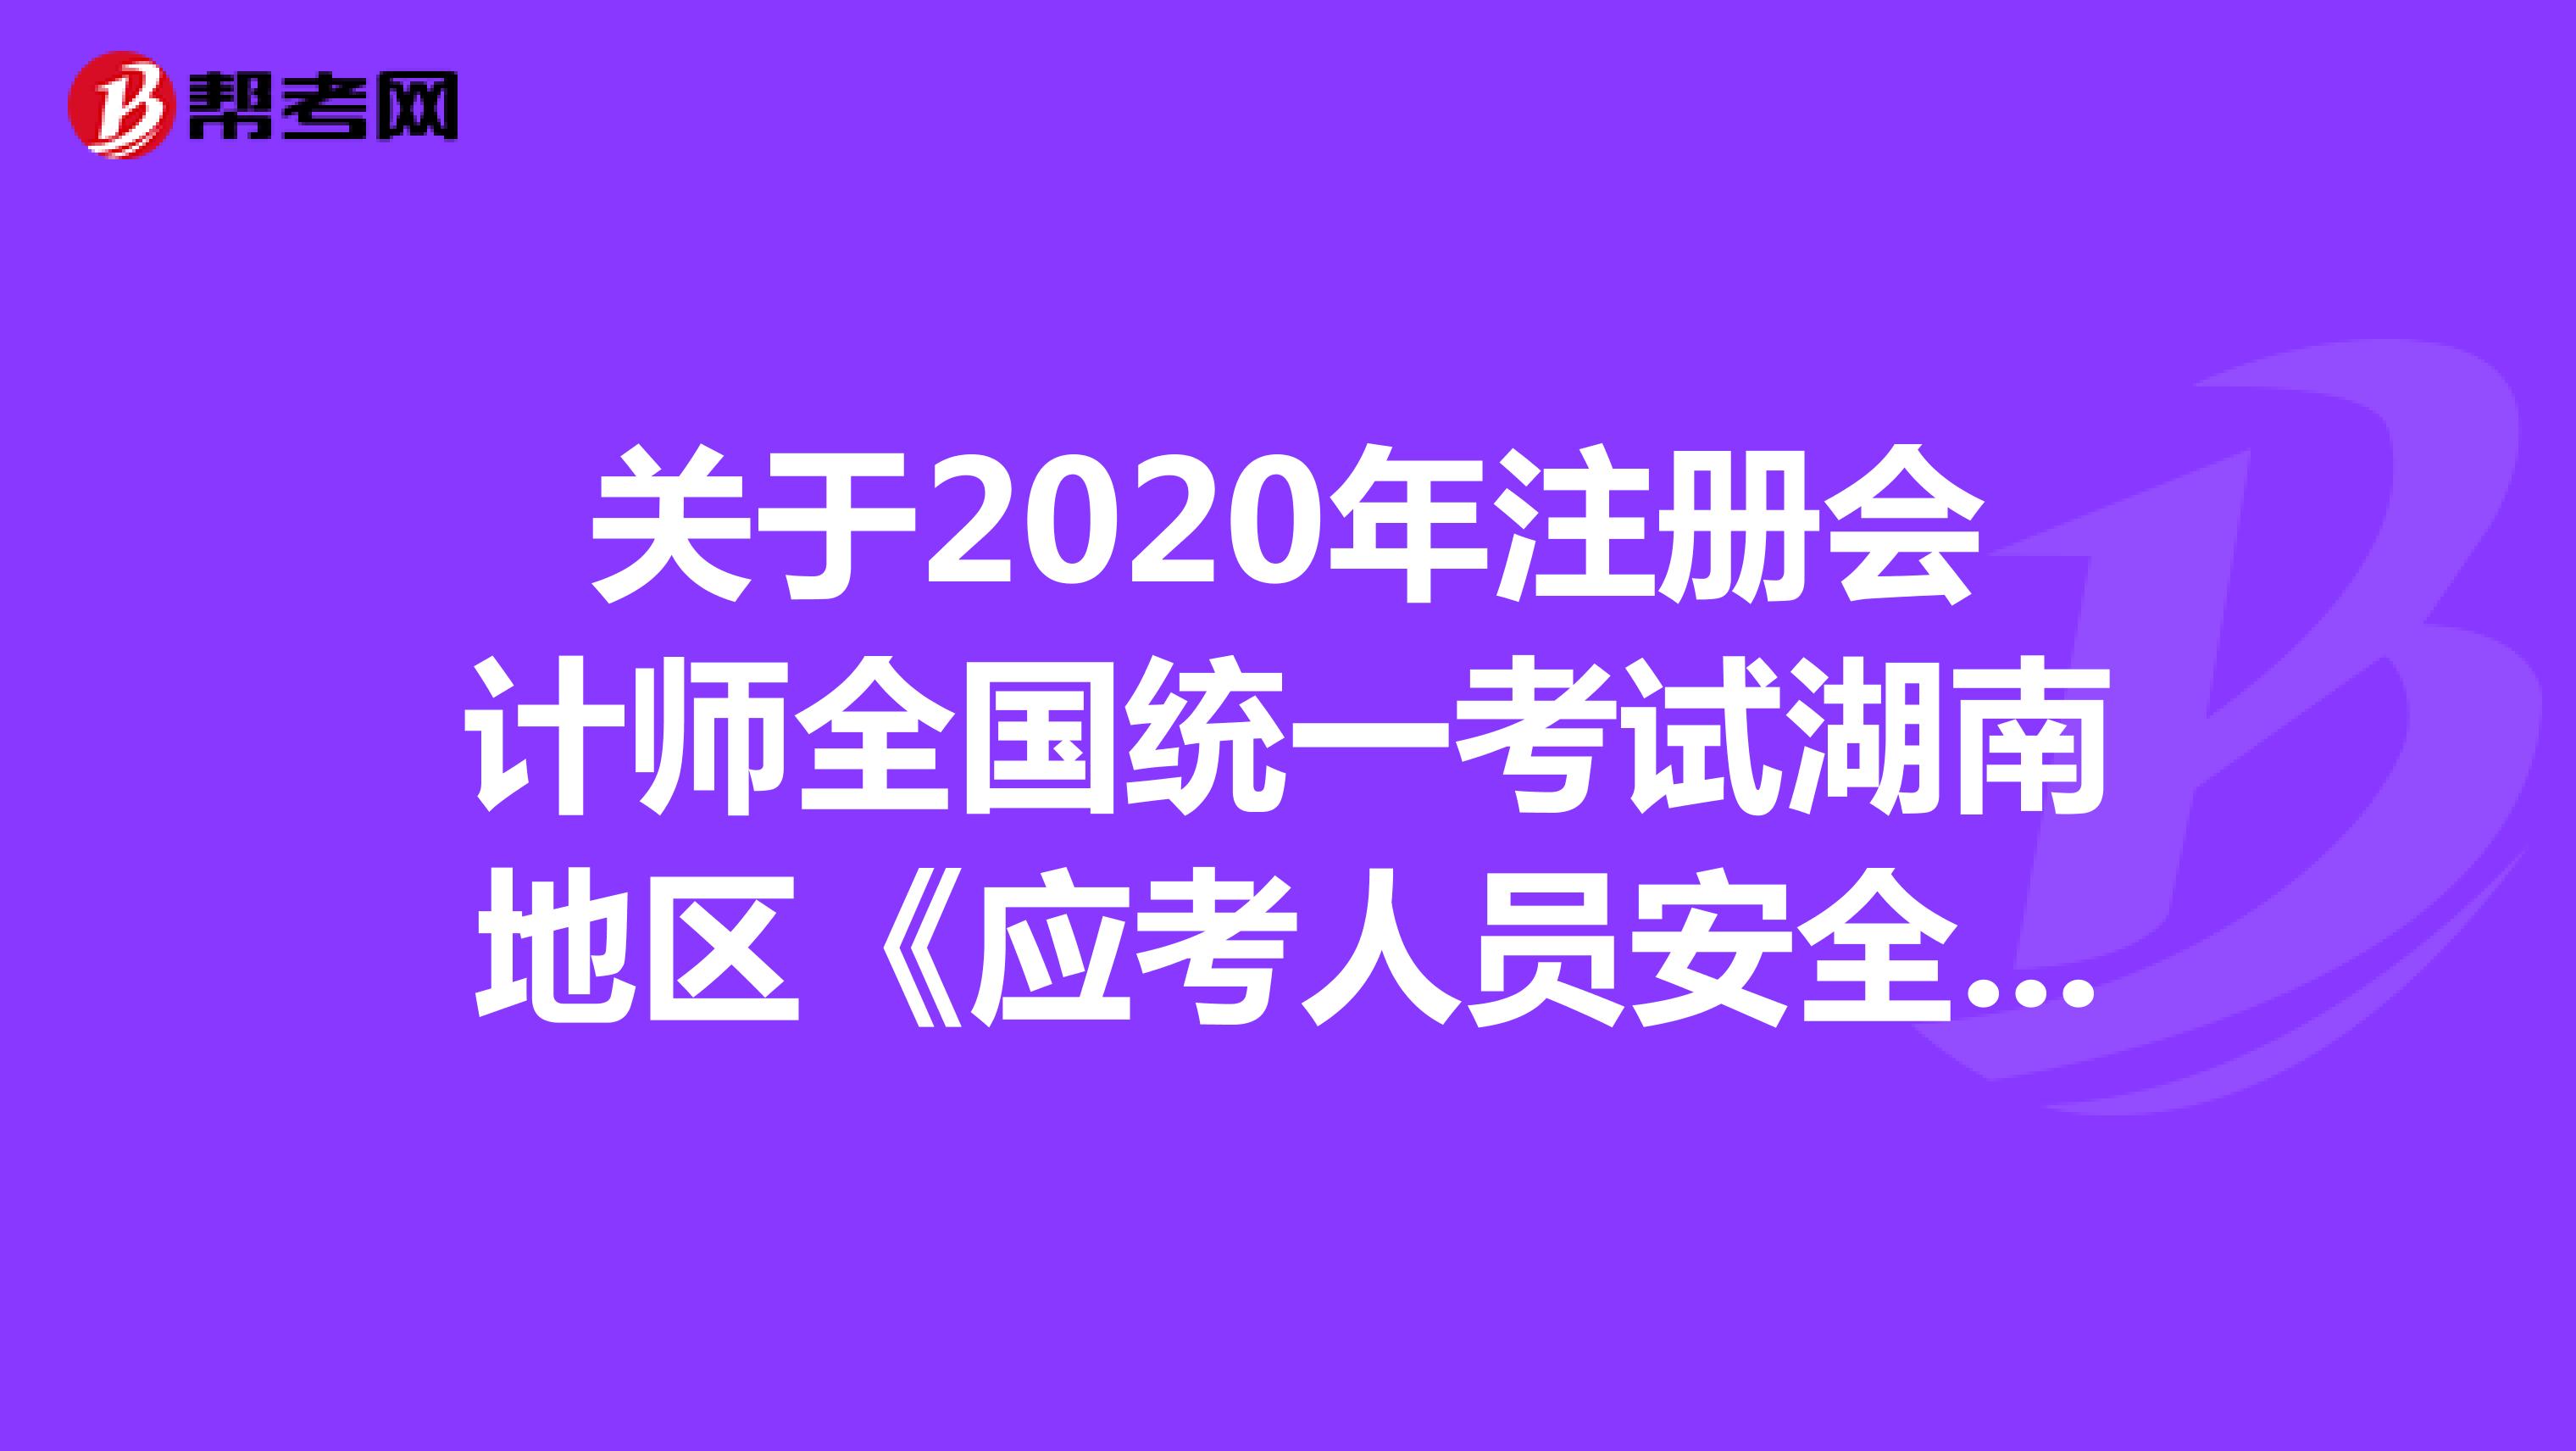 关于2020年注册会计师全国统一考试湖南地区《应考人员安全承诺书》的公告